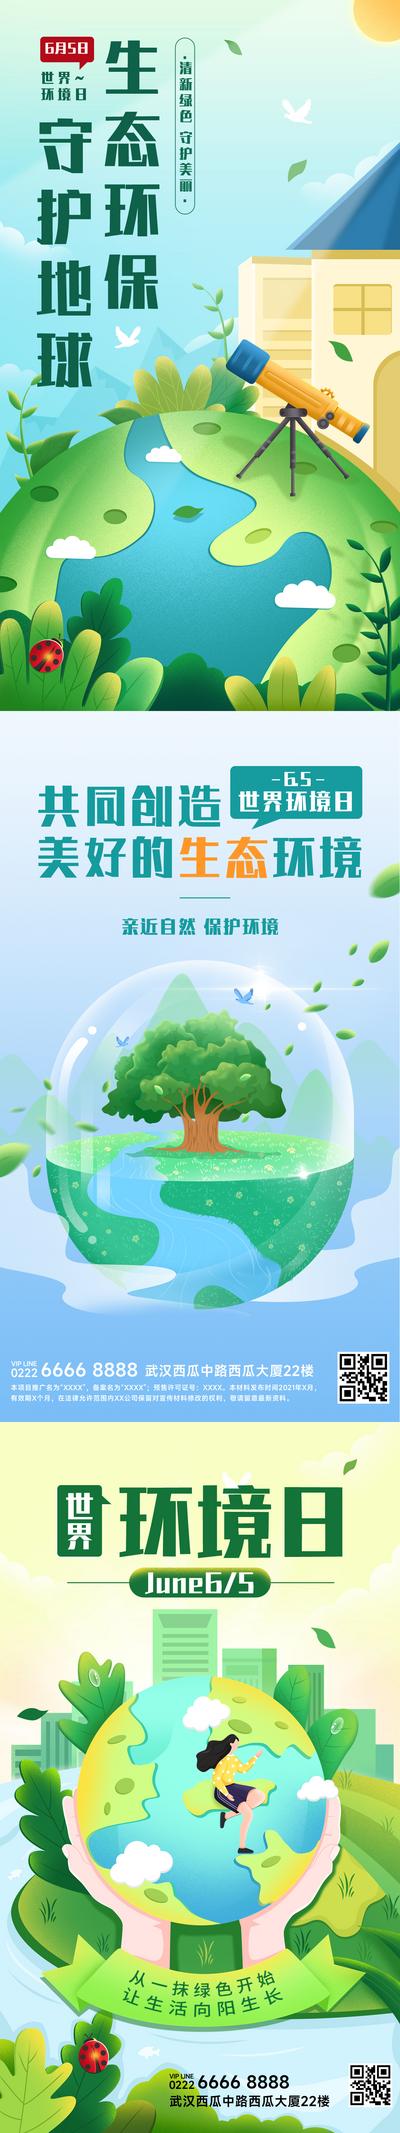 南门网 海报 公历节日 世界环境日 公益 环保 地球 树木 插画